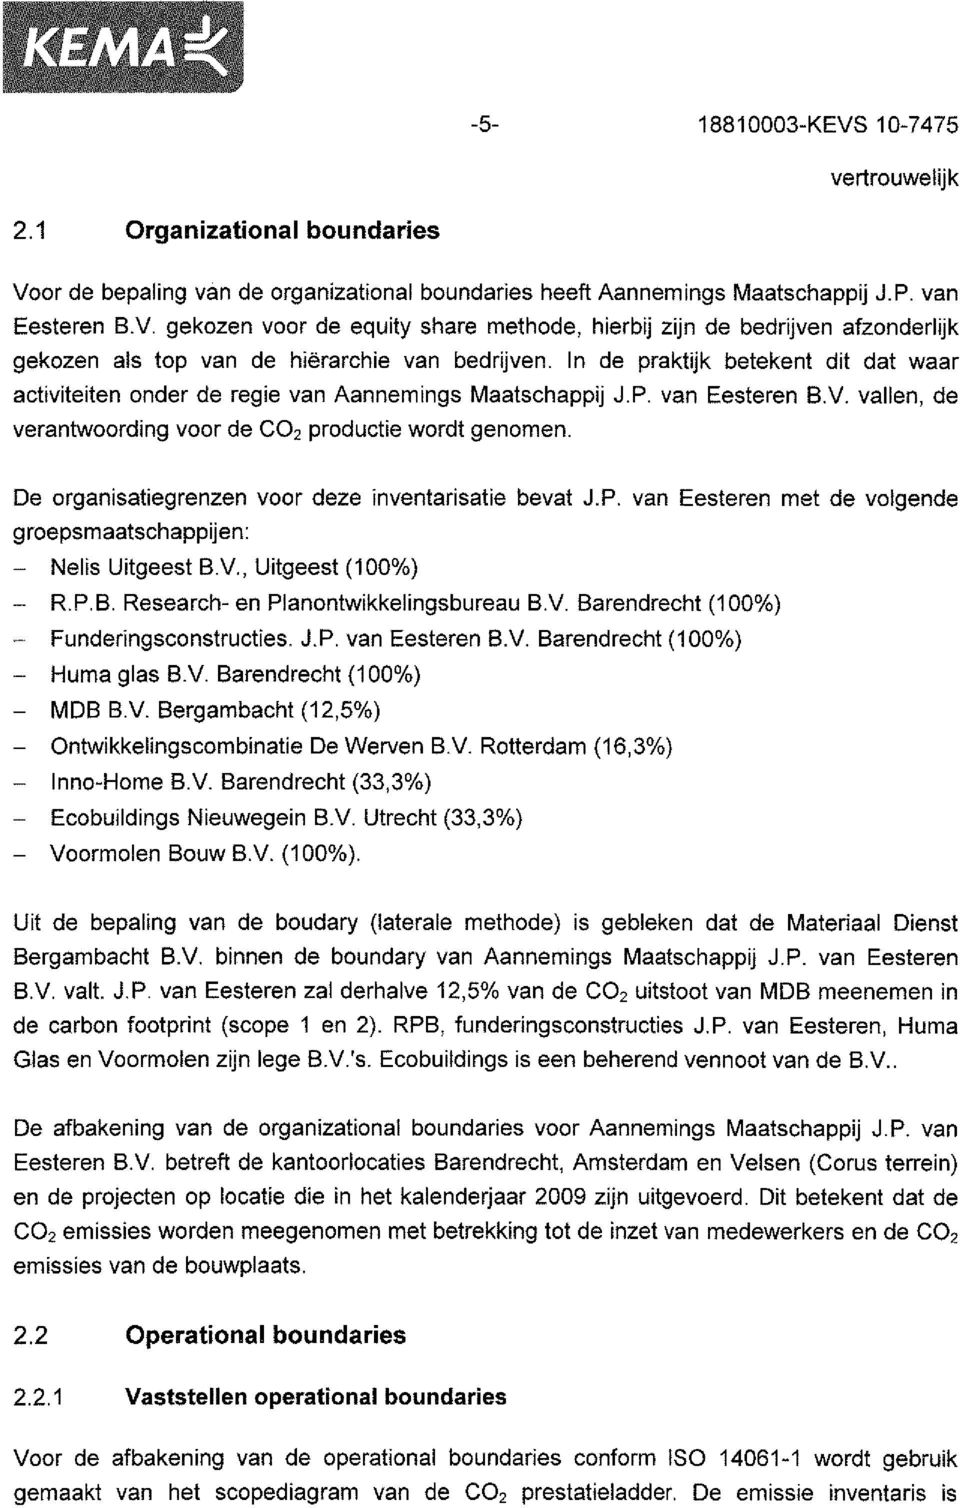 De organisatiegrenzen voor deze inventarisatie bevat J.P. van Eesteren met de volgende groepsmaatschappijen: - Nelis Uitgeest B.V, Uitgeest (1%) - R.P.B. Research- en Planontwikkelingsbureau B.V. Barendrecht (1%) - Funderingsconstructïes.